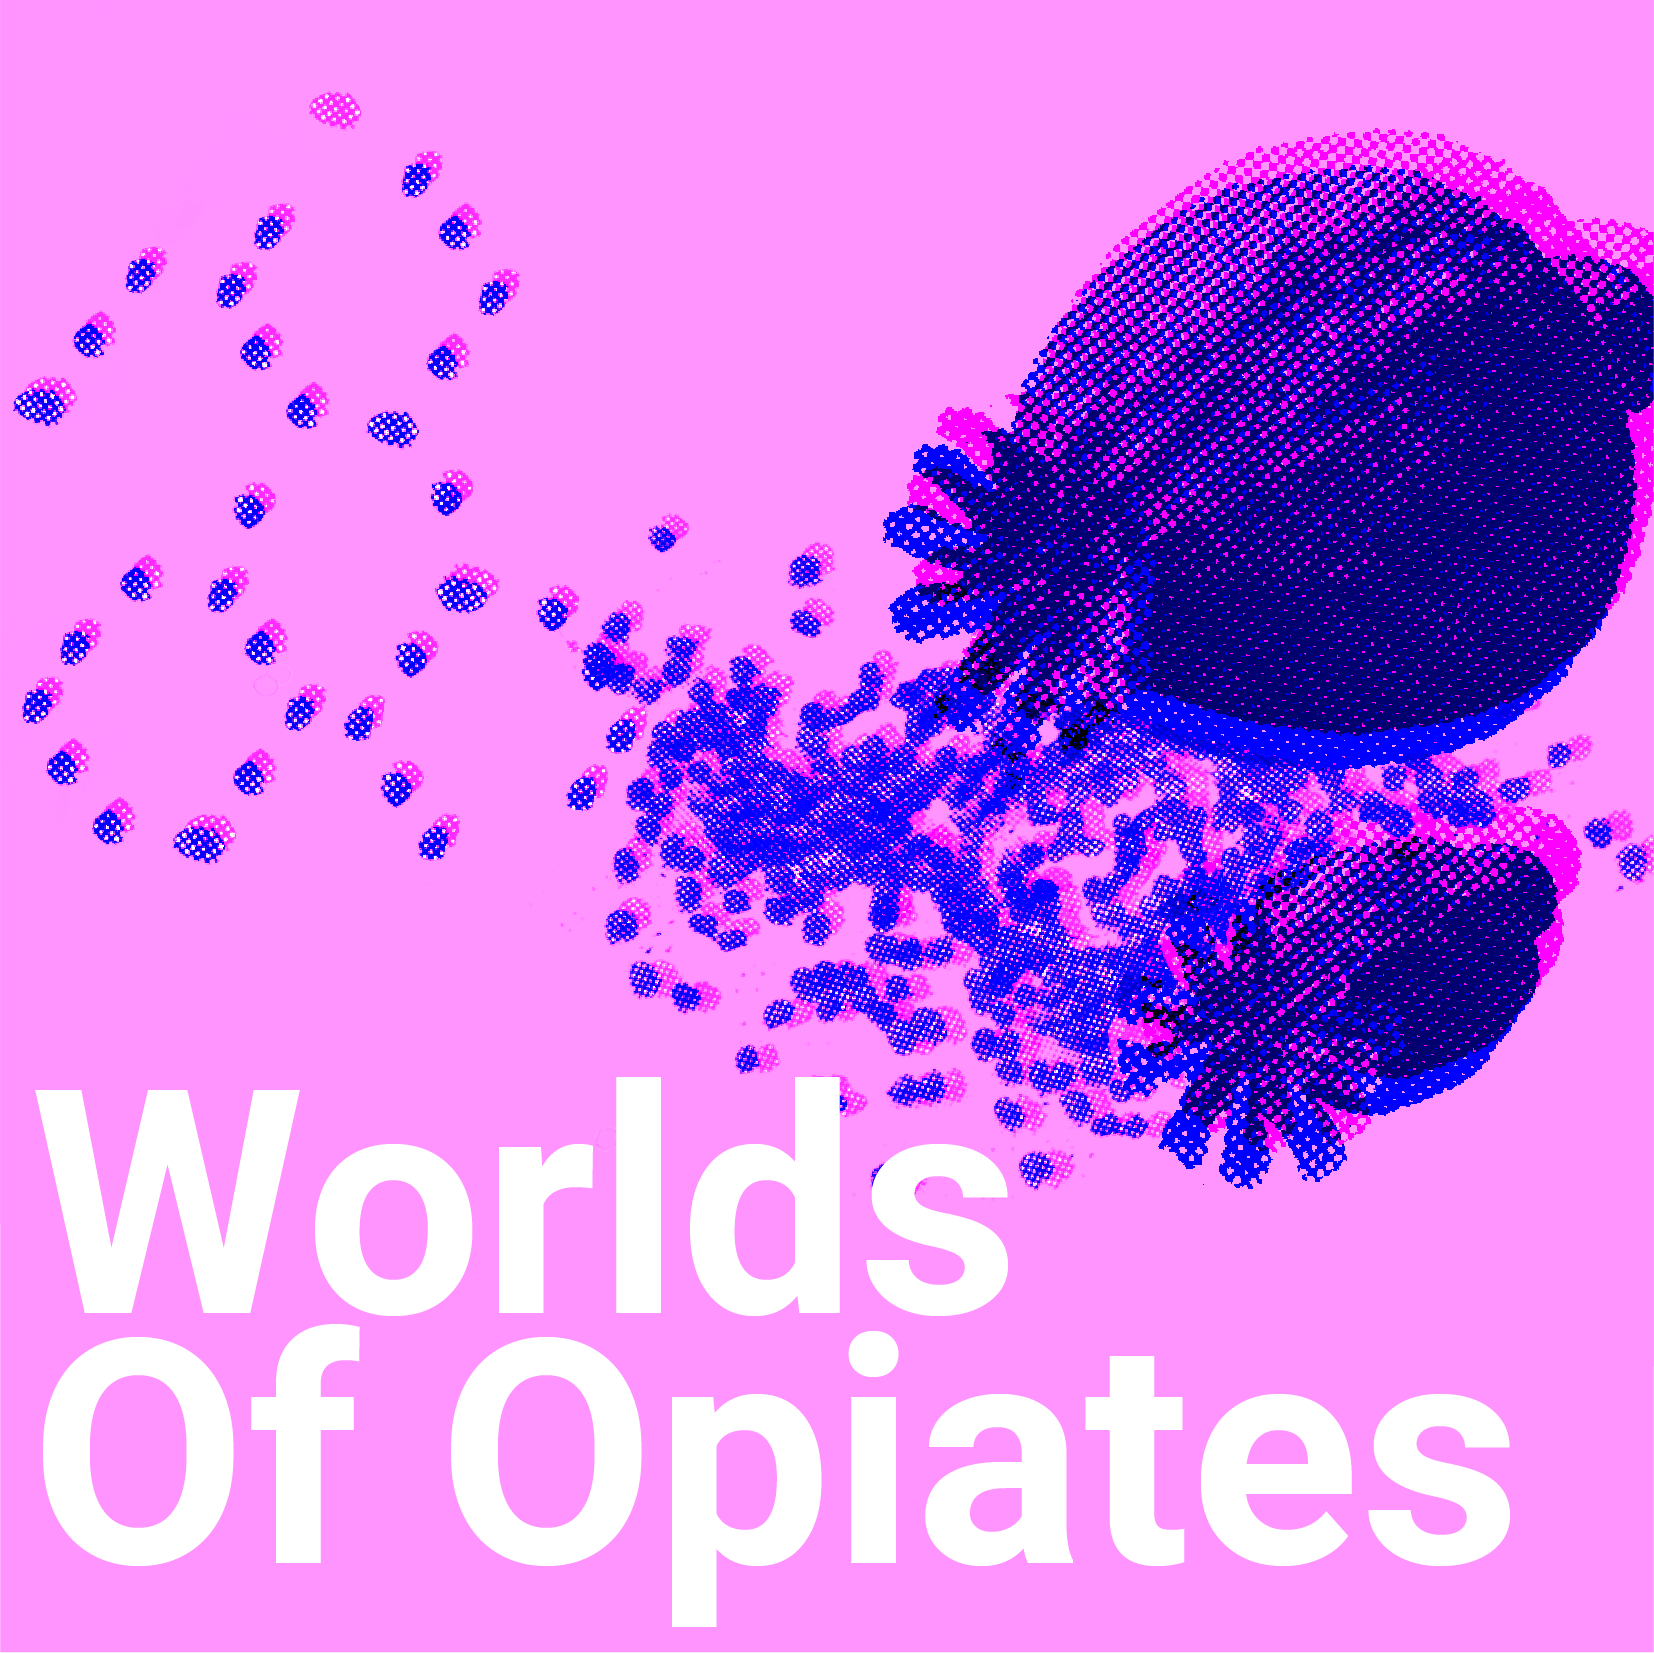 Worlds of Opiates